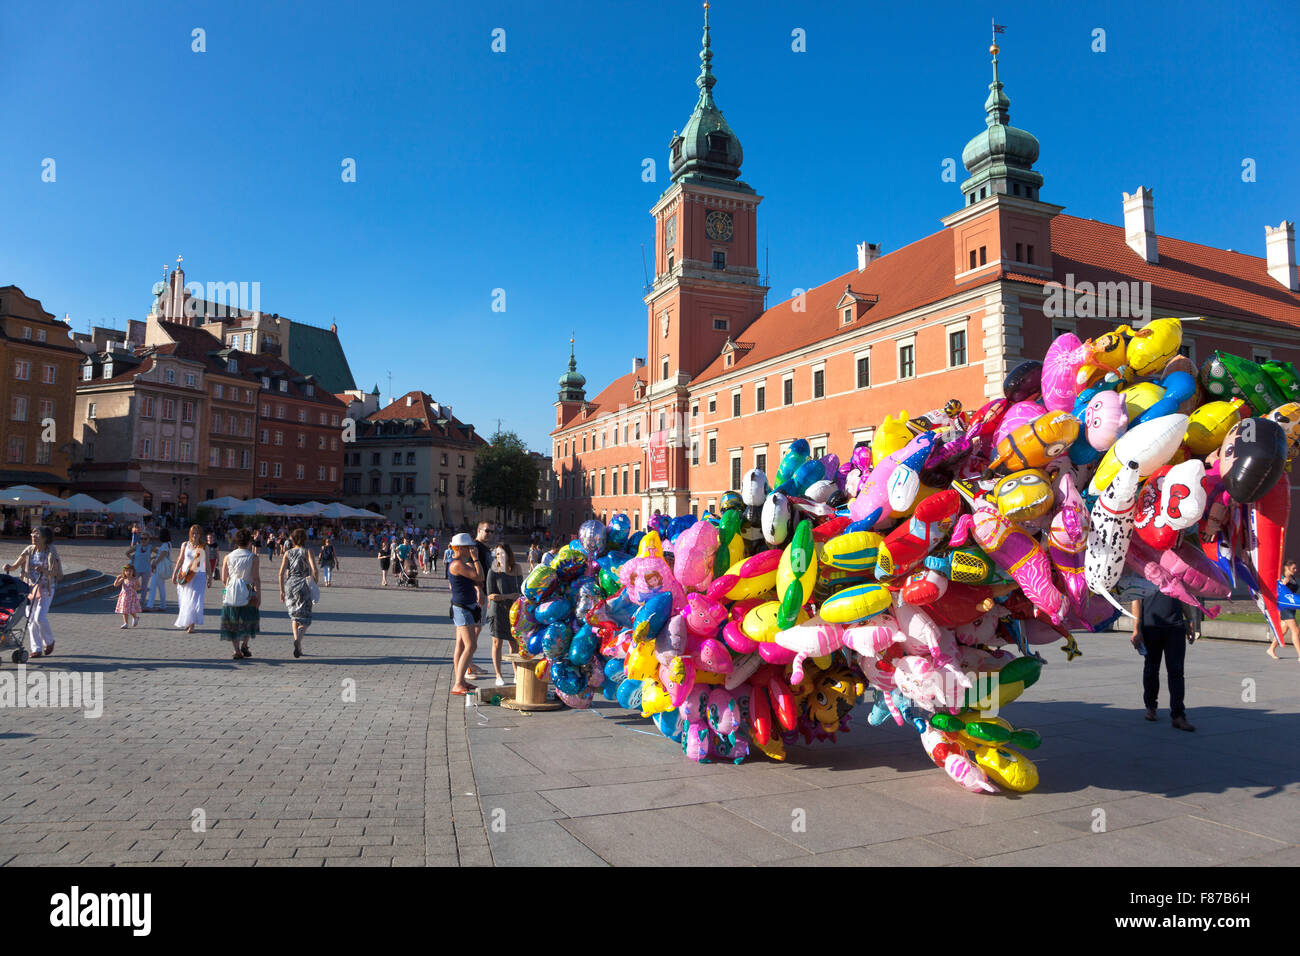 Ballon-Verkäufer in Schlossplatz und Königsschloss in Warschaus Altstadt, Polen Stockfoto